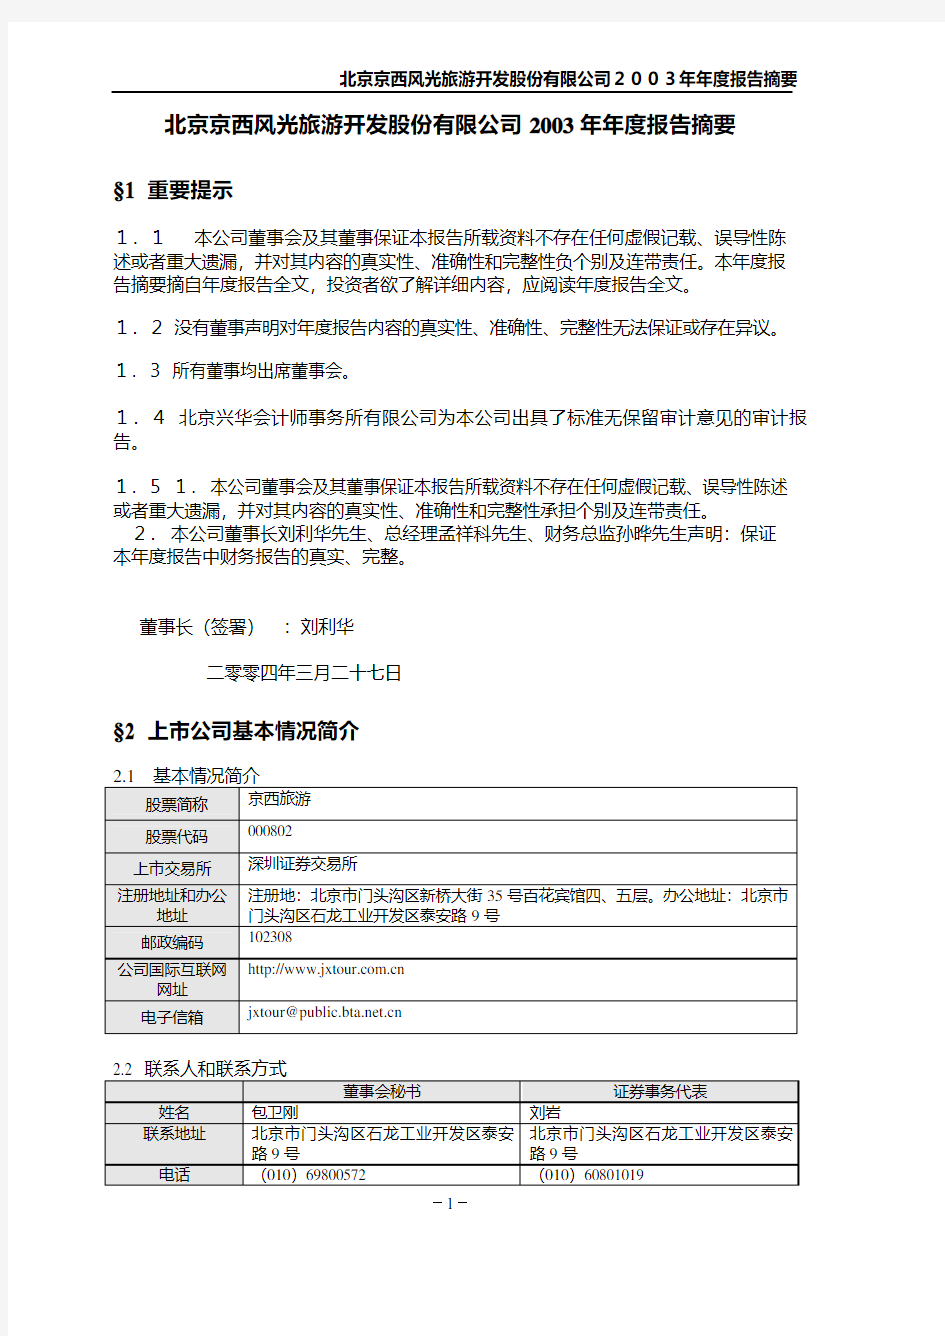 北京京西风光旅游开发股份有限公司2003年年度报告摘要